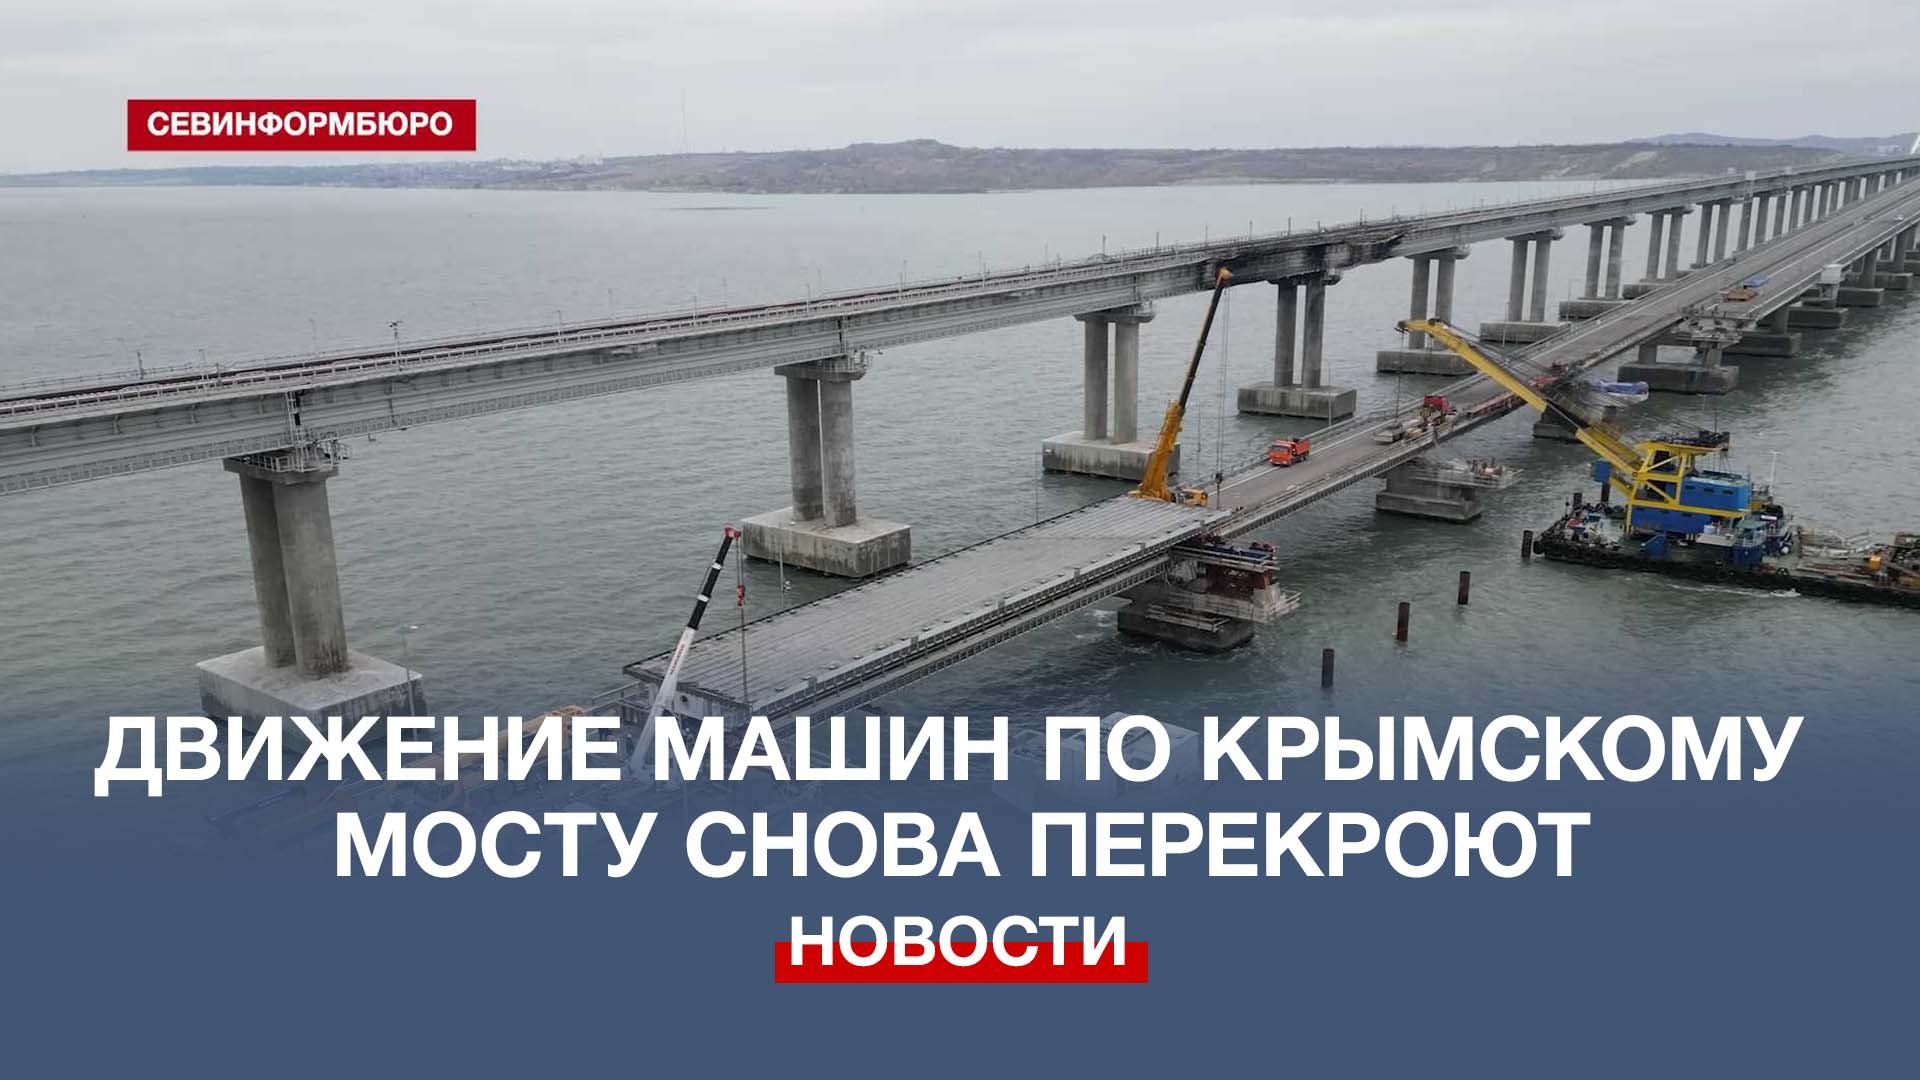 как будет выглядеть крымский мост